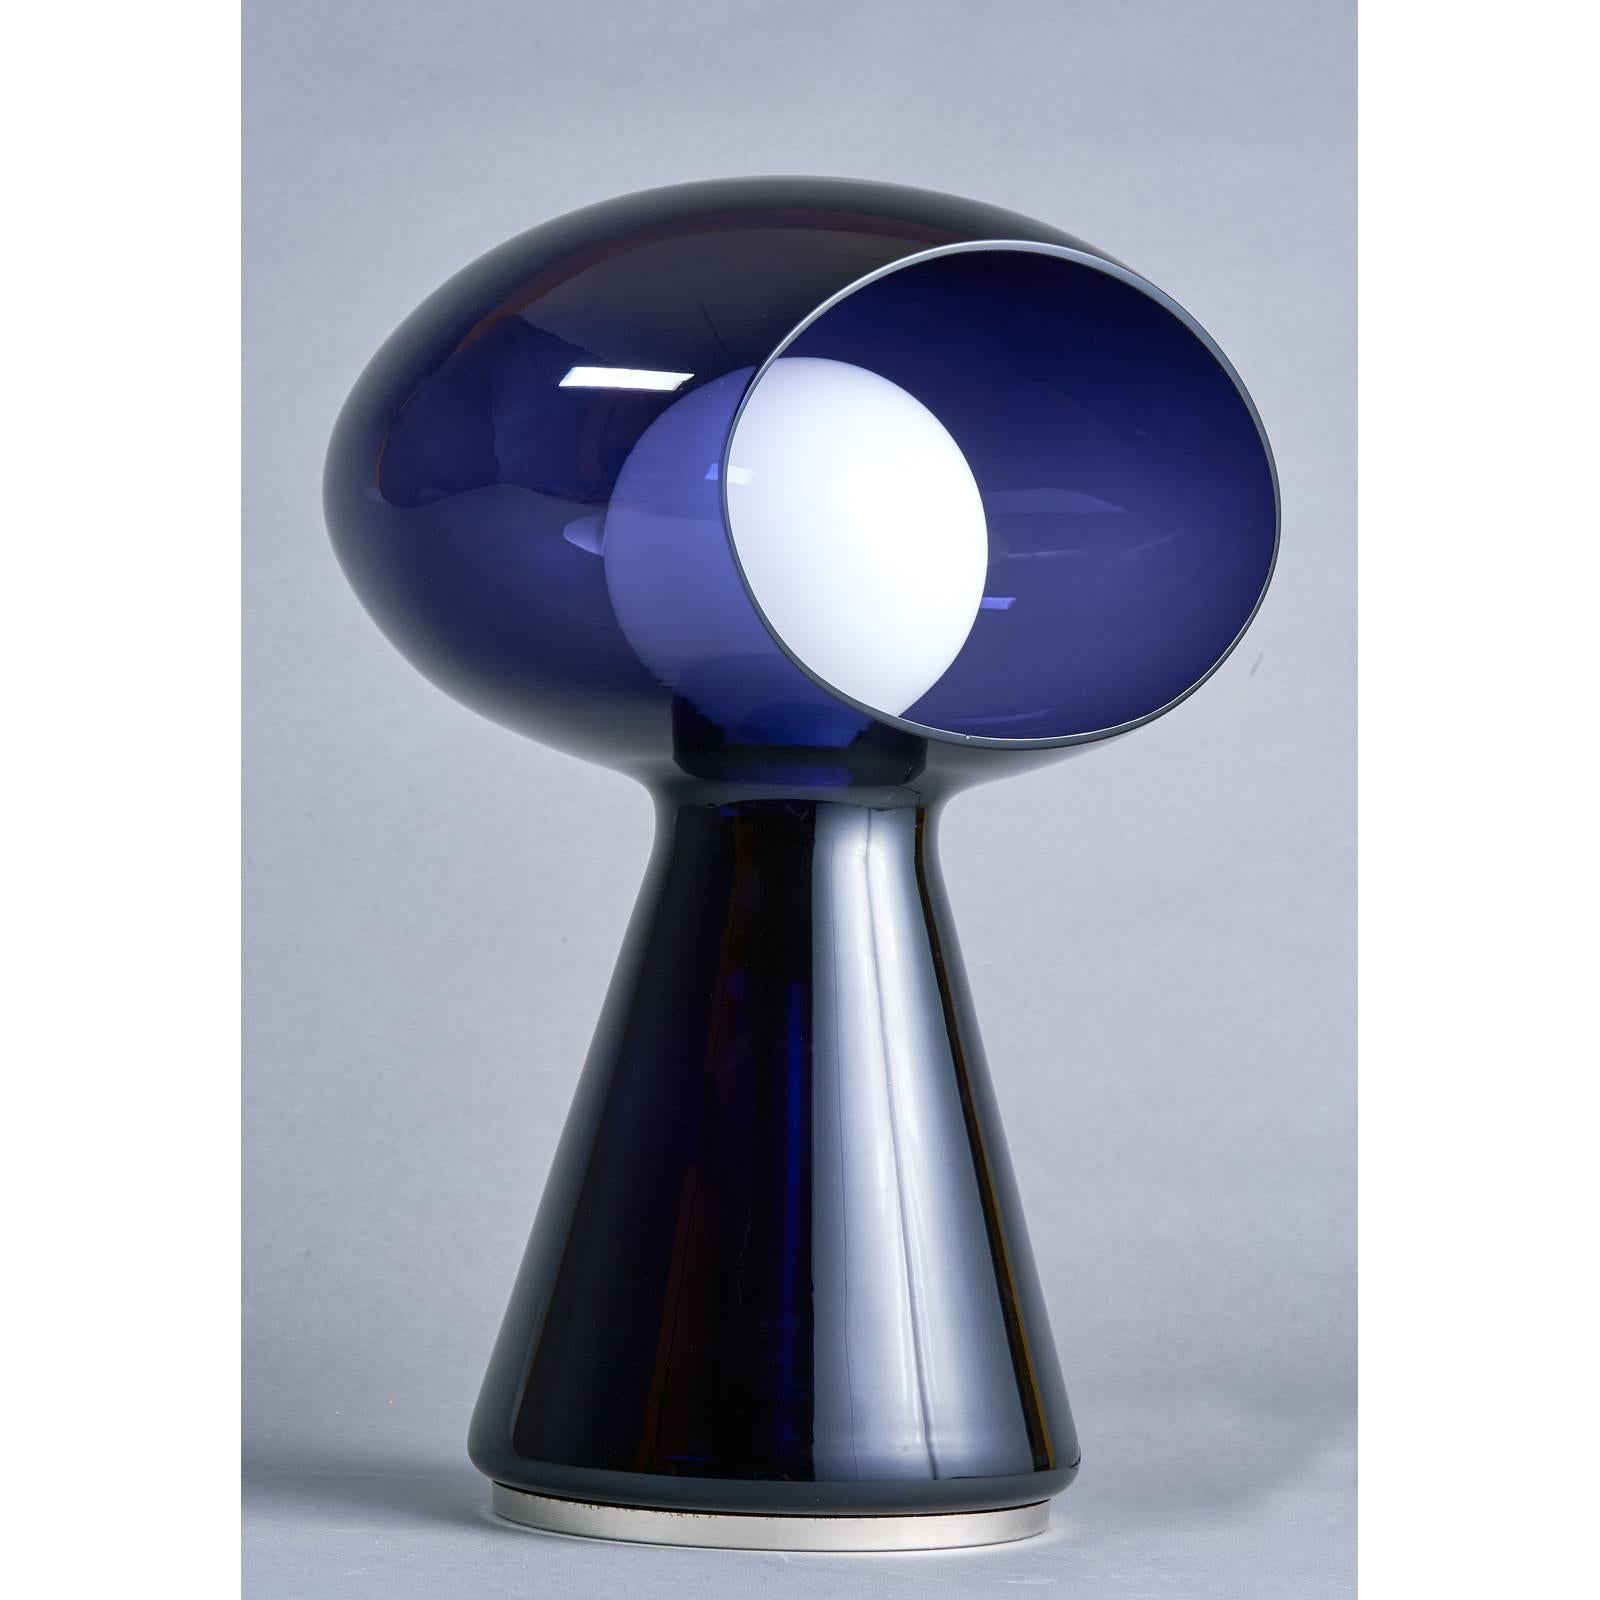 Vistosi
Rare lampe sculpturale en verre soufflé de Murano de couleur violette par Vistosi,
avec étiquettes Murano et Vistosi
Italie, années 1970.
Dimensions : 17 H x 12 Ø.
Recâblé pour une utilisation aux États-Unis avec une ampoule à culot standard.